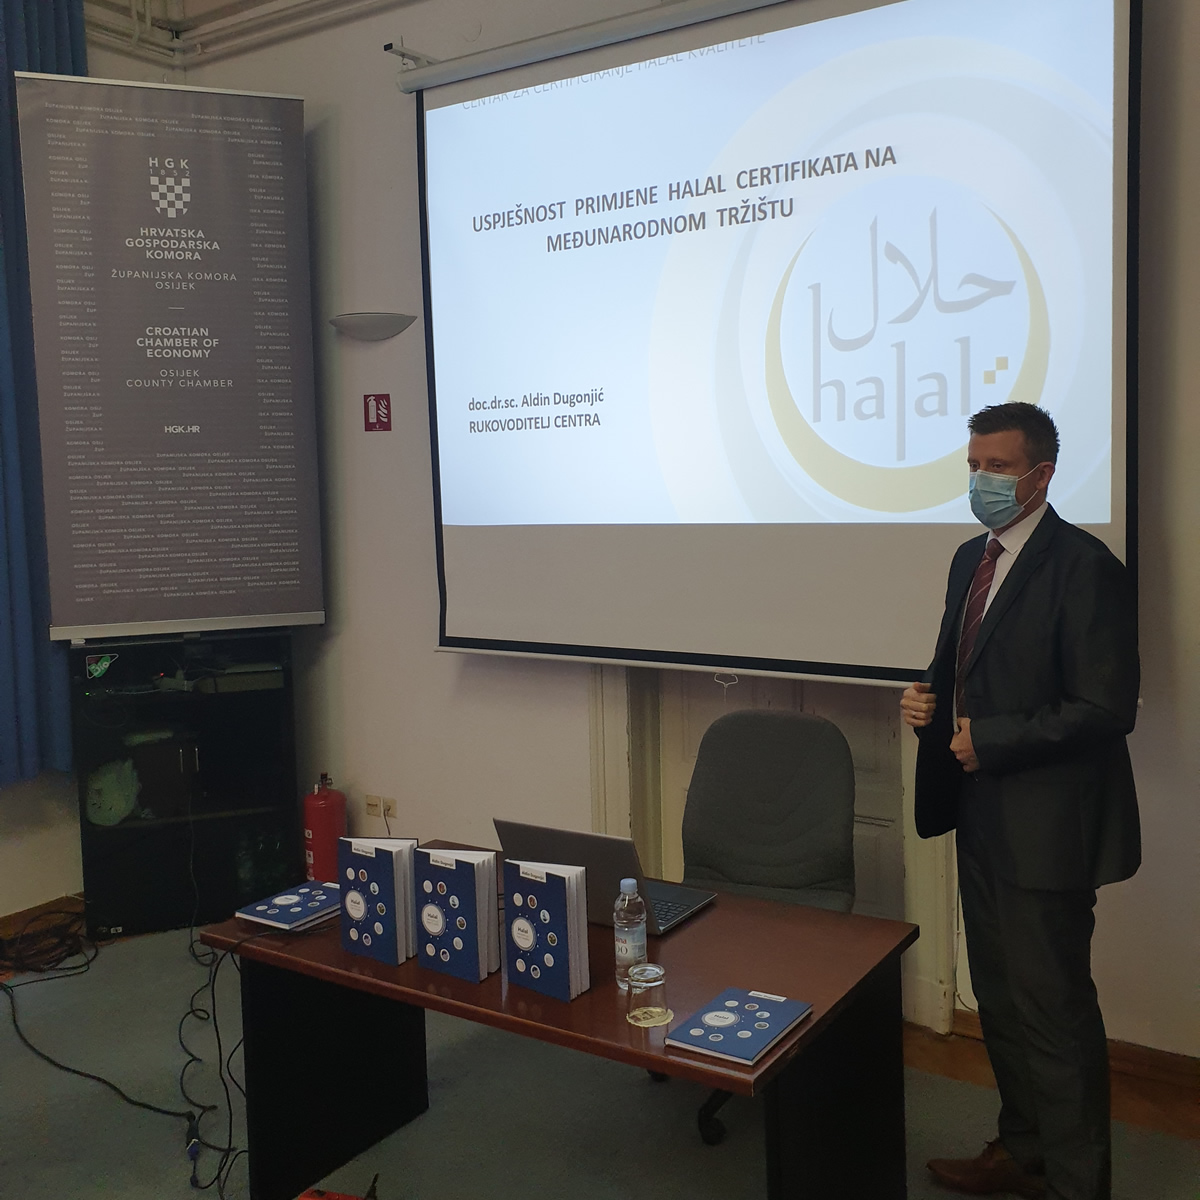 Seminar "Uspješnost primjene halal certifikata na međunarodnom tržištu"